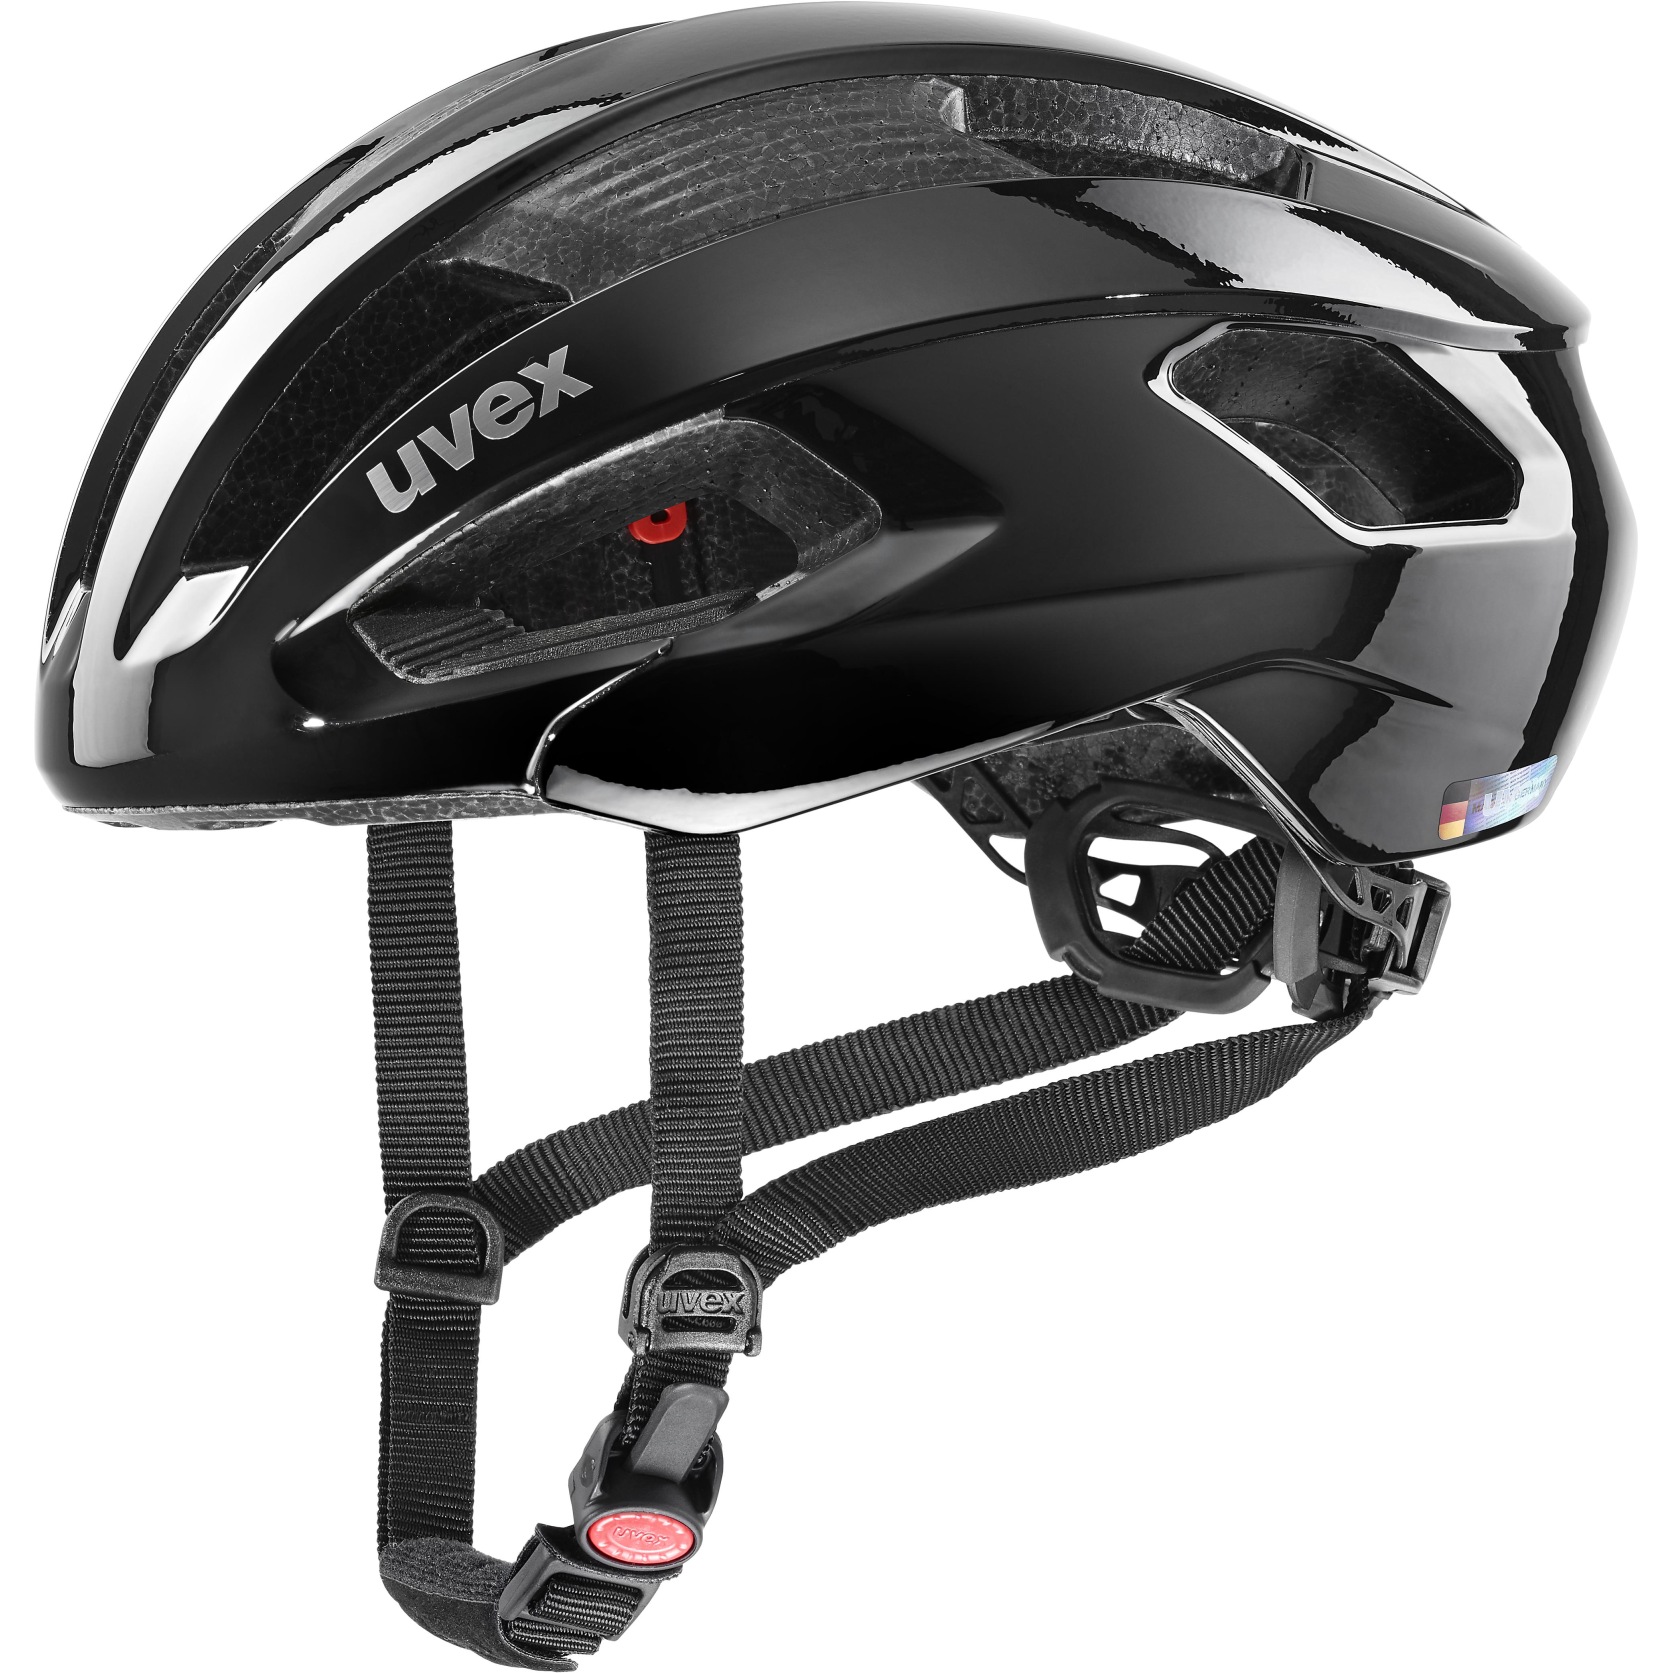 Produktbild von Uvex rise Helm - all black